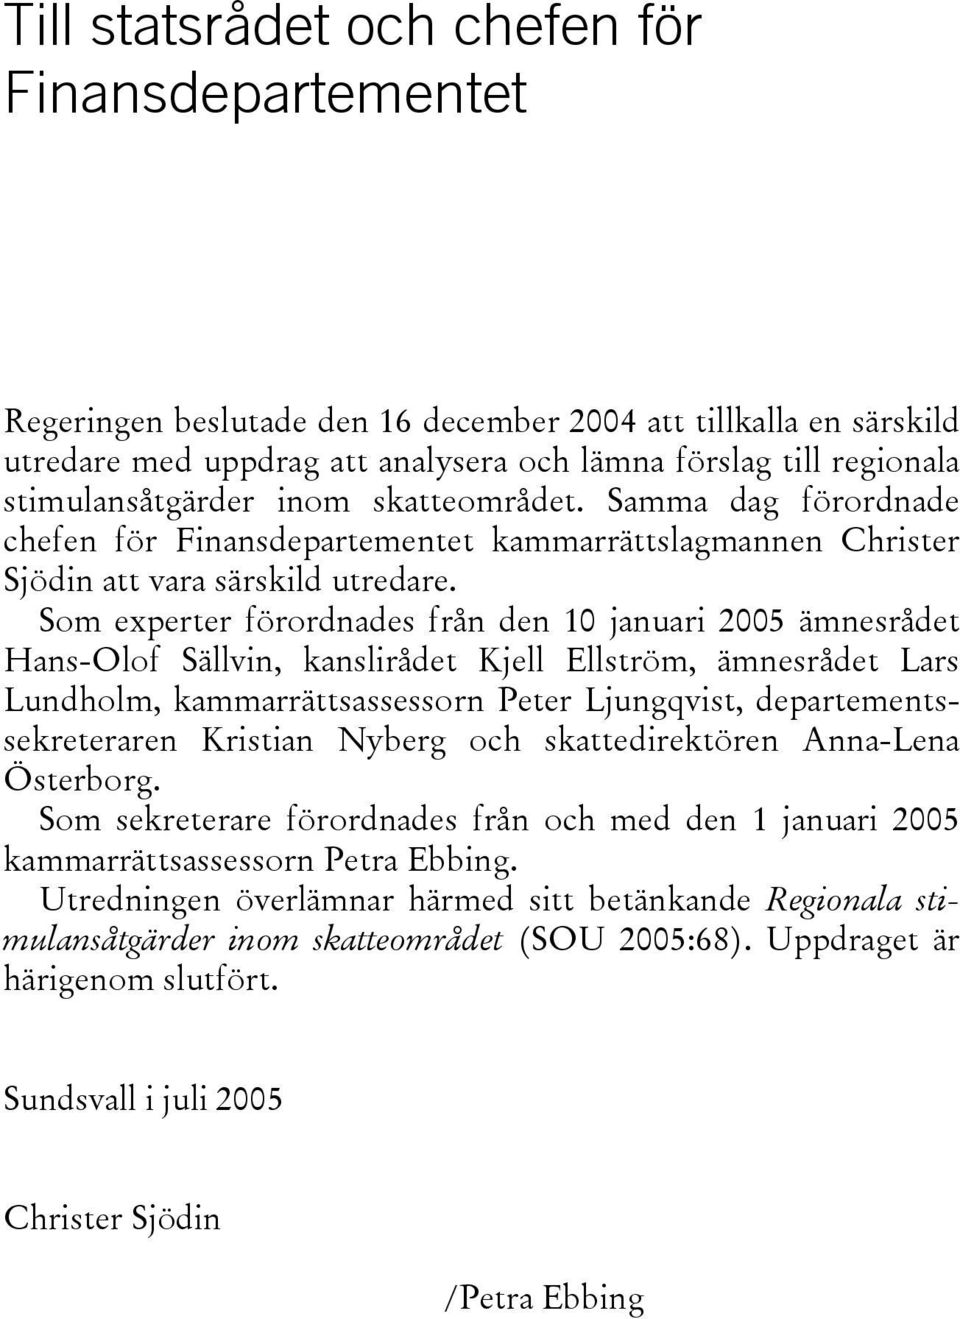 Som experter förordnades från den 10 januari 2005 ämnesrådet Hans-Olof Sällvin, kanslirådet Kjell Ellström, ämnesrådet Lars Lundholm, kammarrättsassessorn Peter Ljungqvist, departementssekreteraren